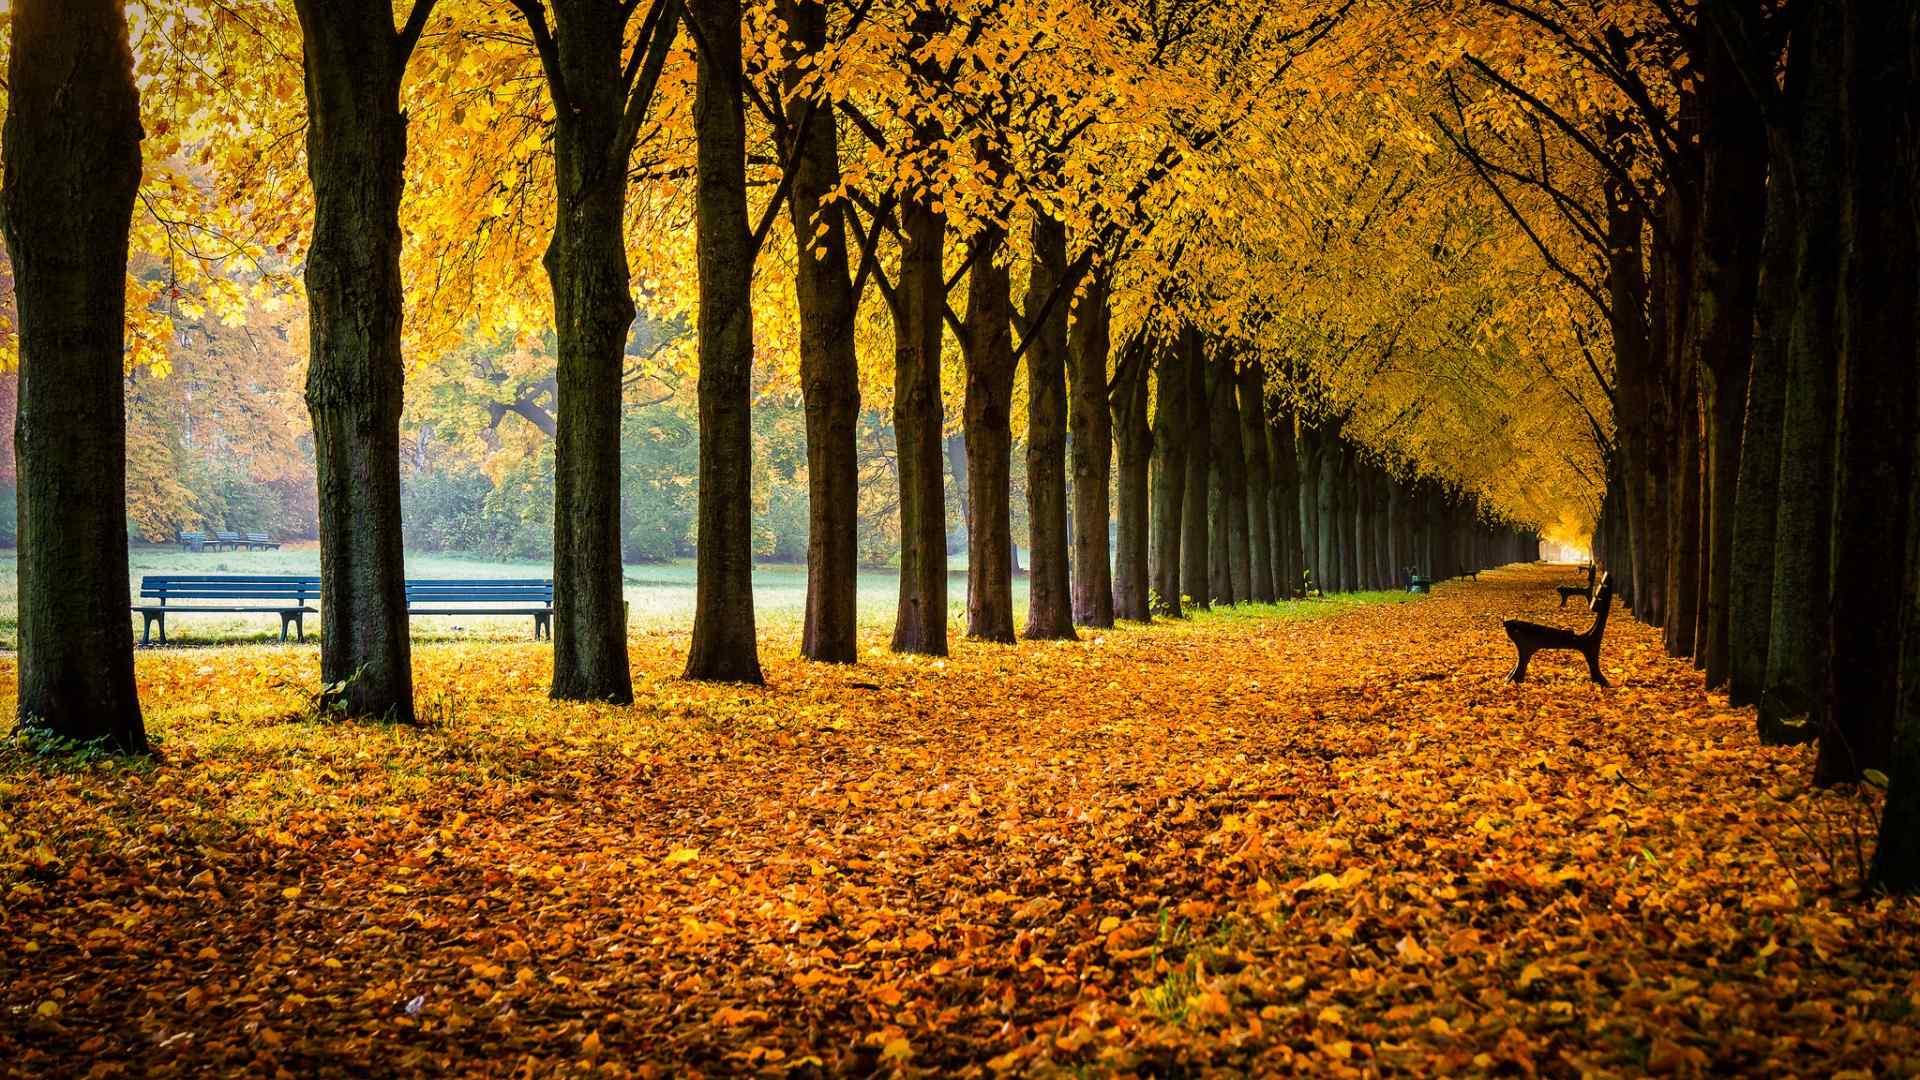 唯美的金黄色秋天风景桌面壁纸